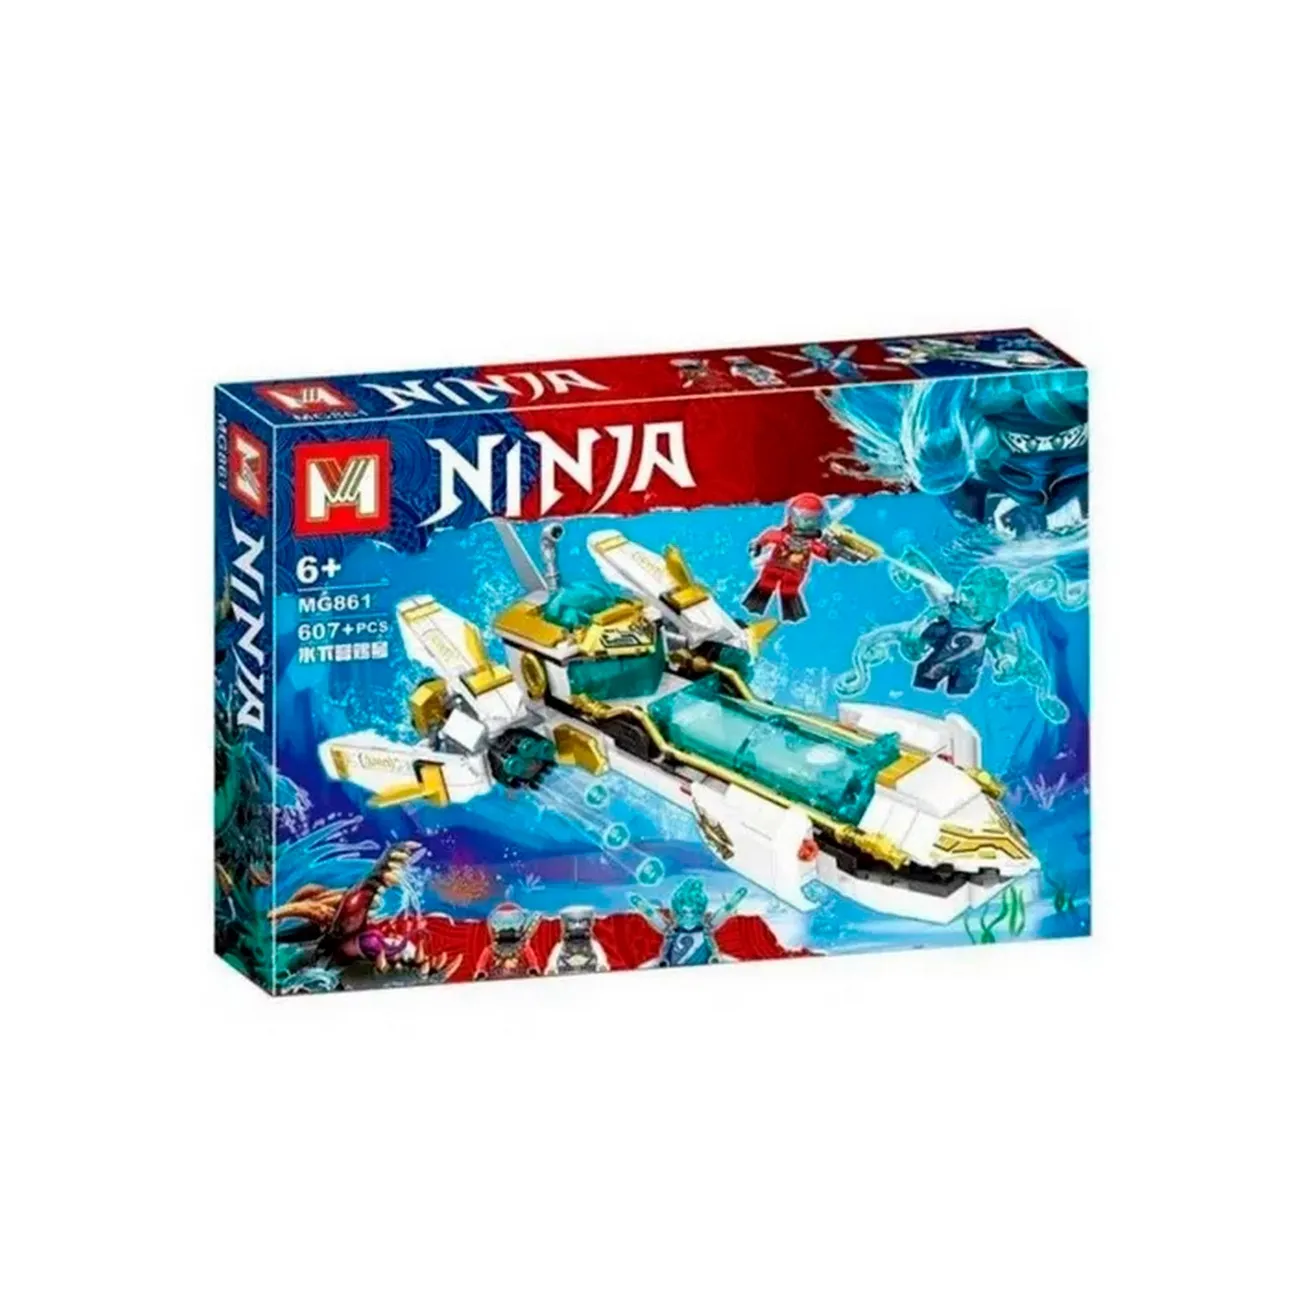 Ninja Nave Espacial Armables Armatodo Juguete Niños Armable